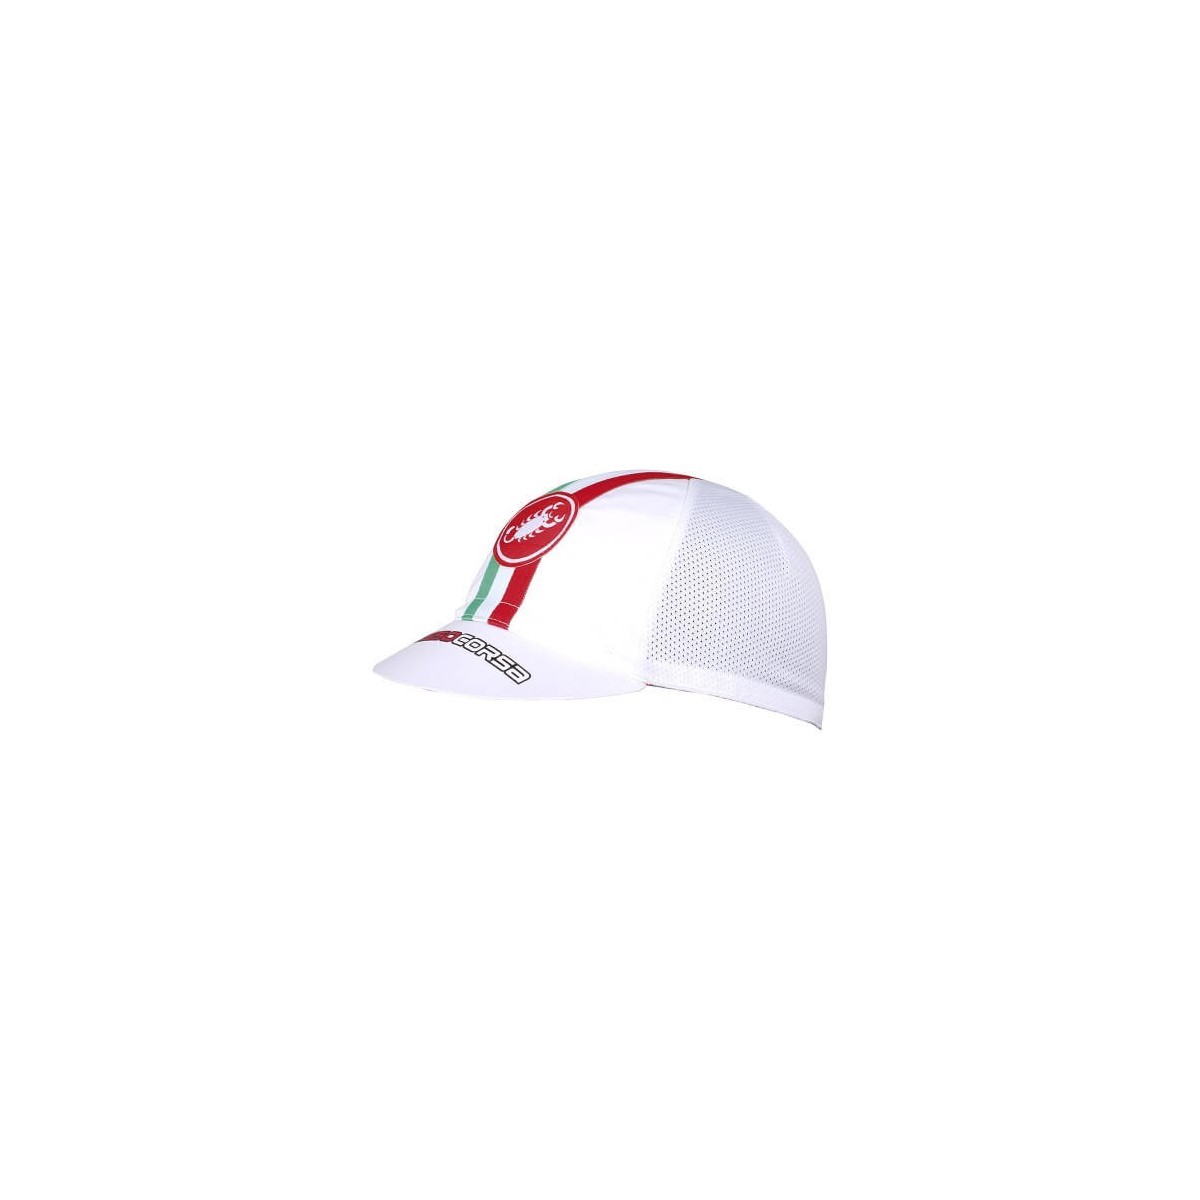 sich zum günstig Kaufen-Castelli Performance White Cap. Castelli Performance White Cap <![CDATA[Es besteht aus einem hoch atmungsaktiven Material und eignet sich perfekt für einen lässigen Stil oder zum Tragen im Radsporttraining unter dem Helm.]]>. 